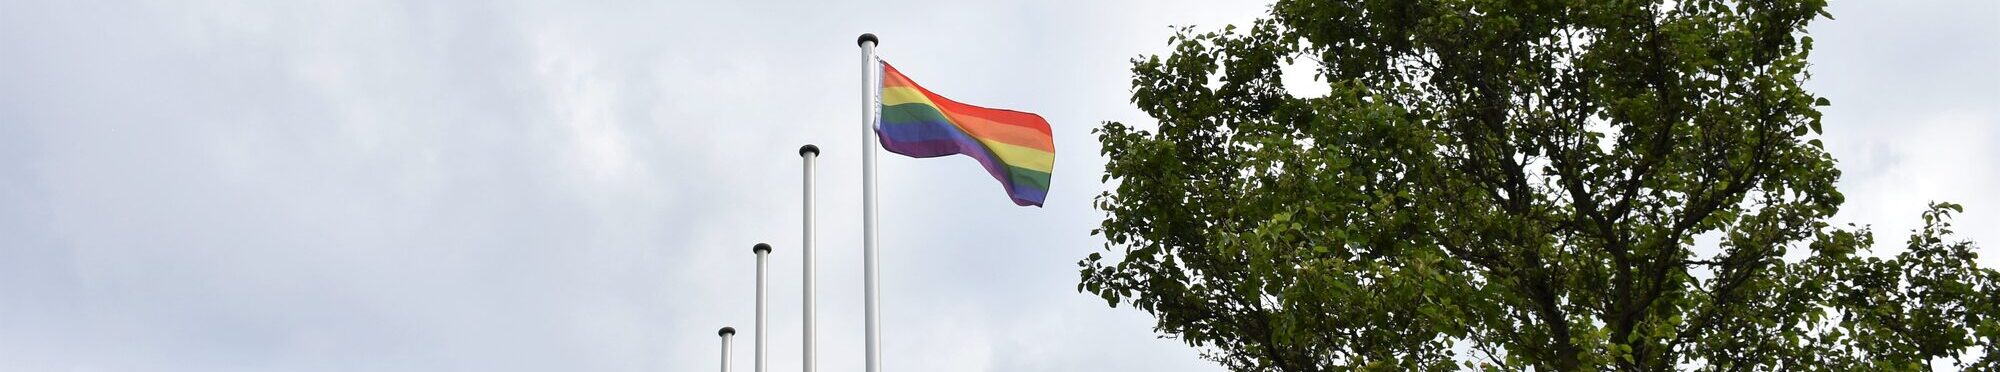 Regenbogenflagge weht vor dem Kreishaus in Düren.